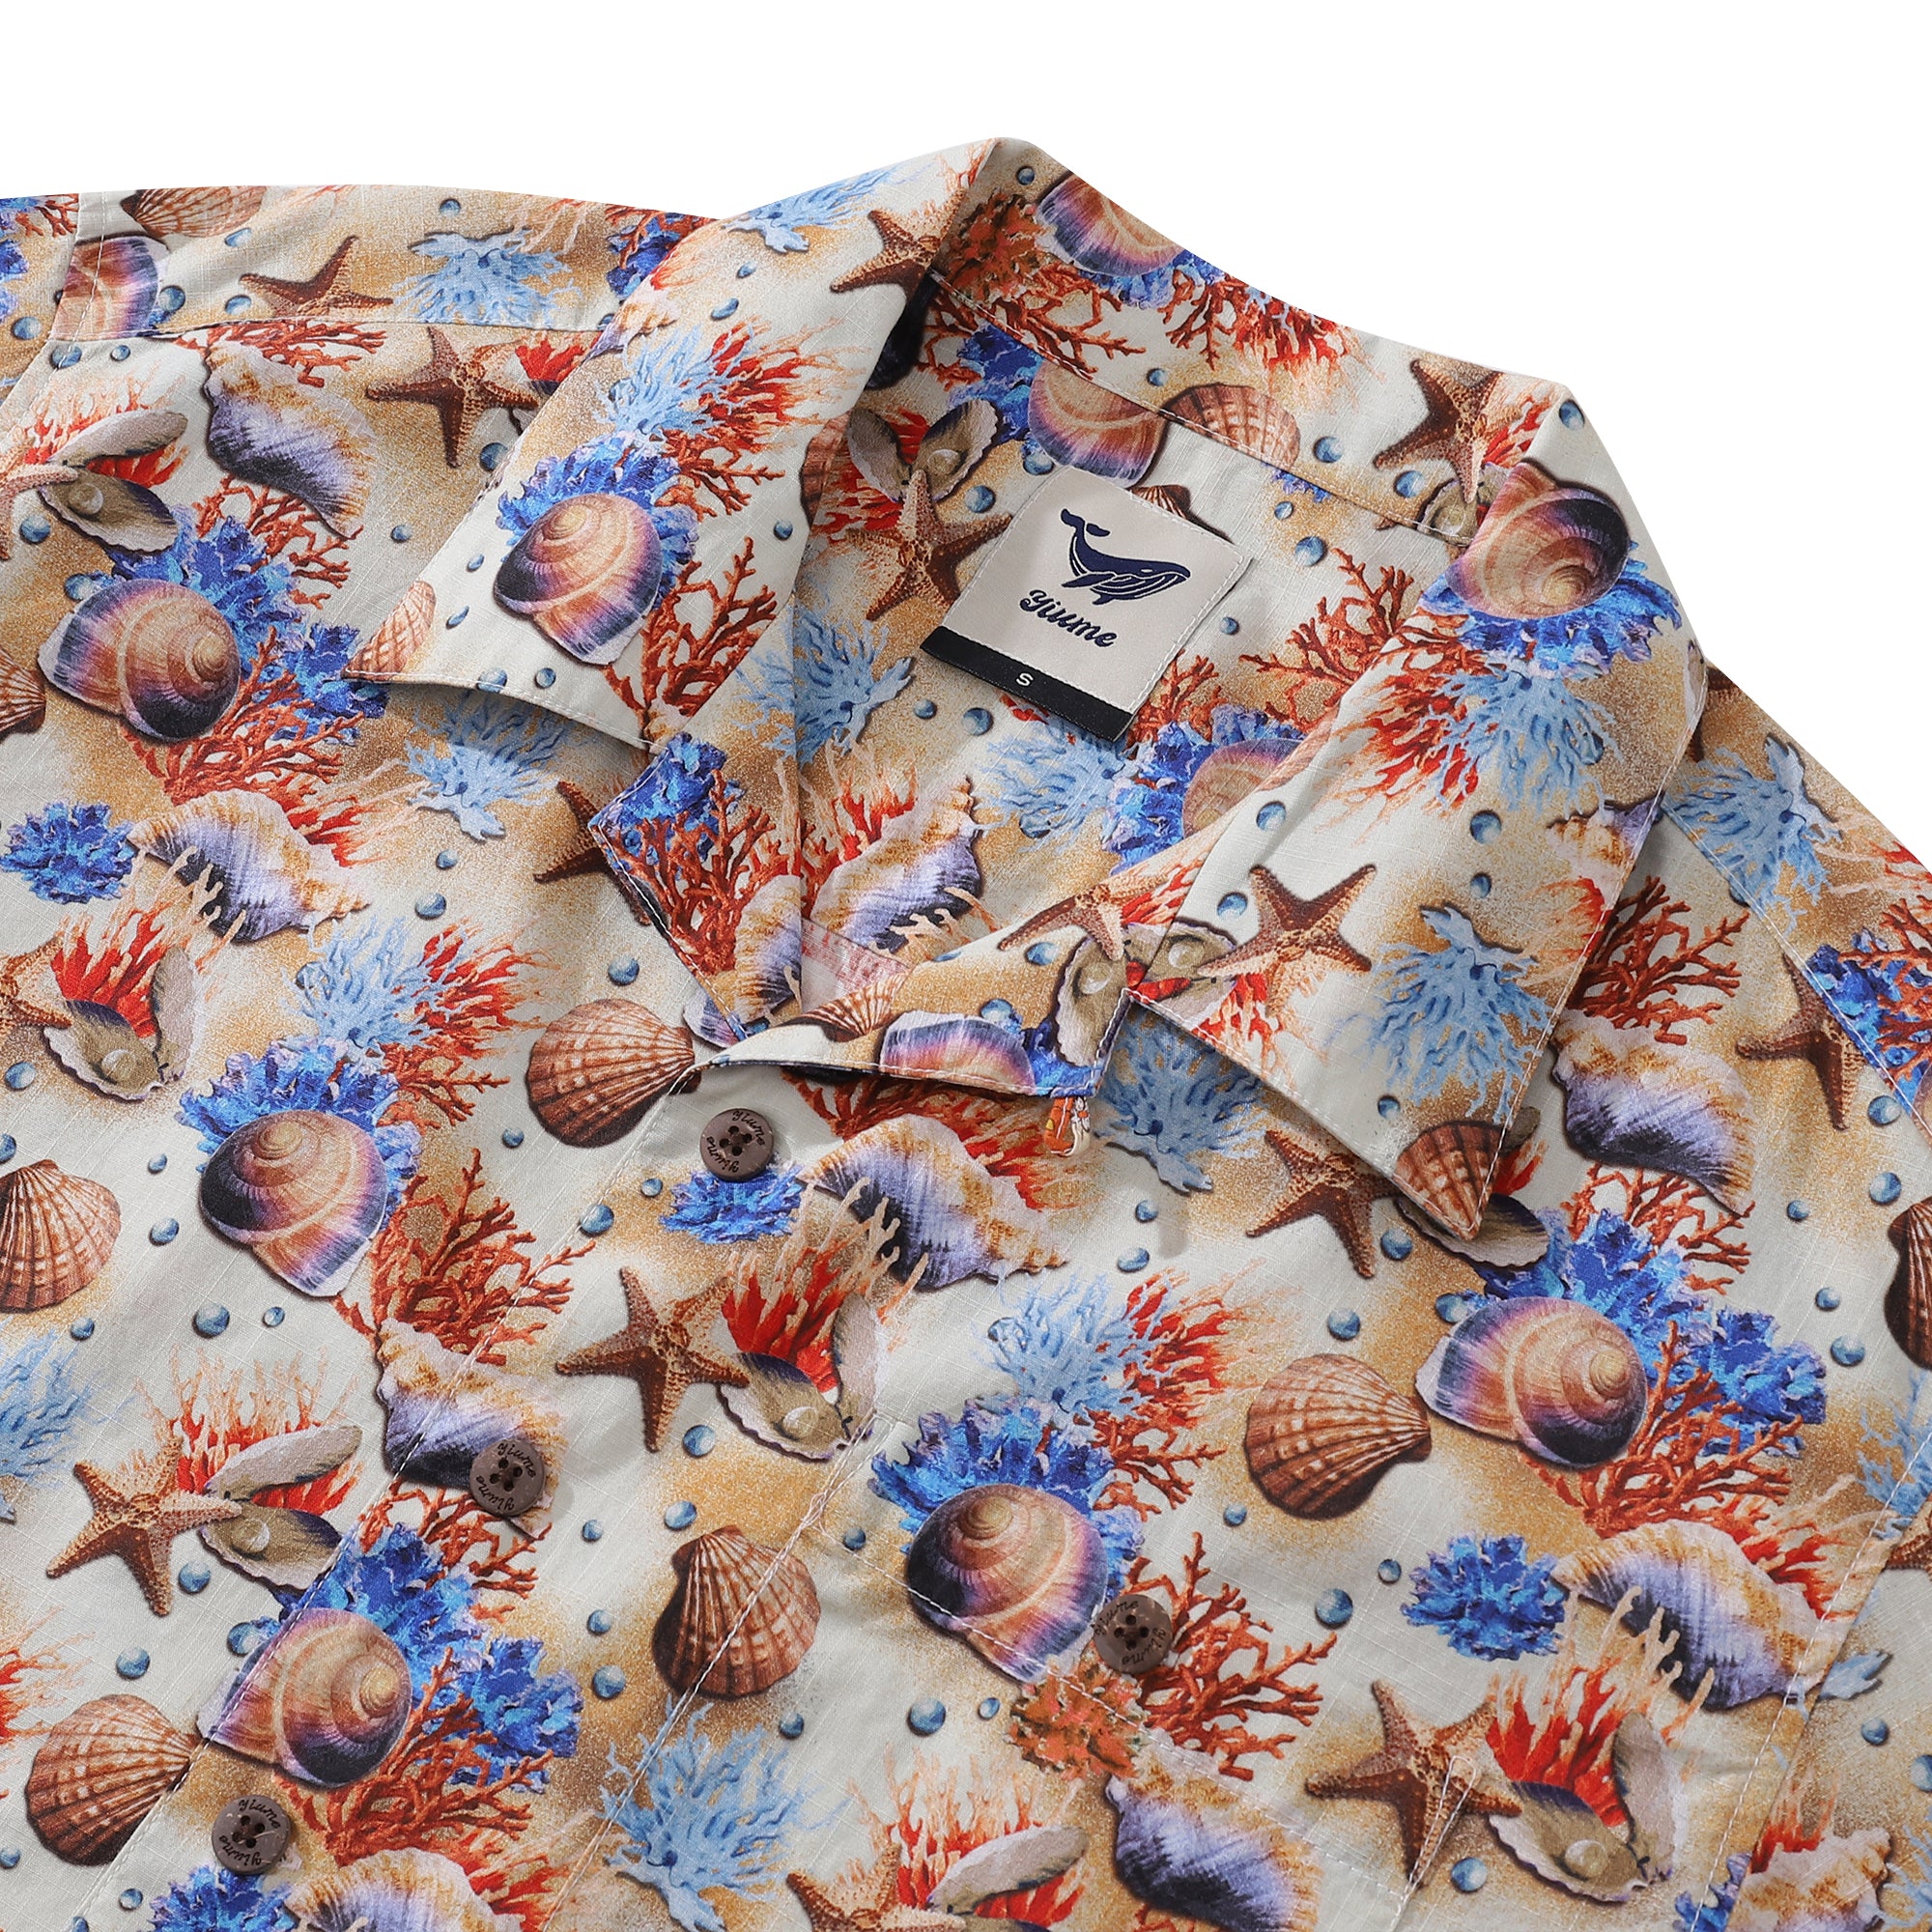 Hawaiihemd für Herren Secrets of the Sea Hemd mit Camp-Kragen, 100 % Baumwolle